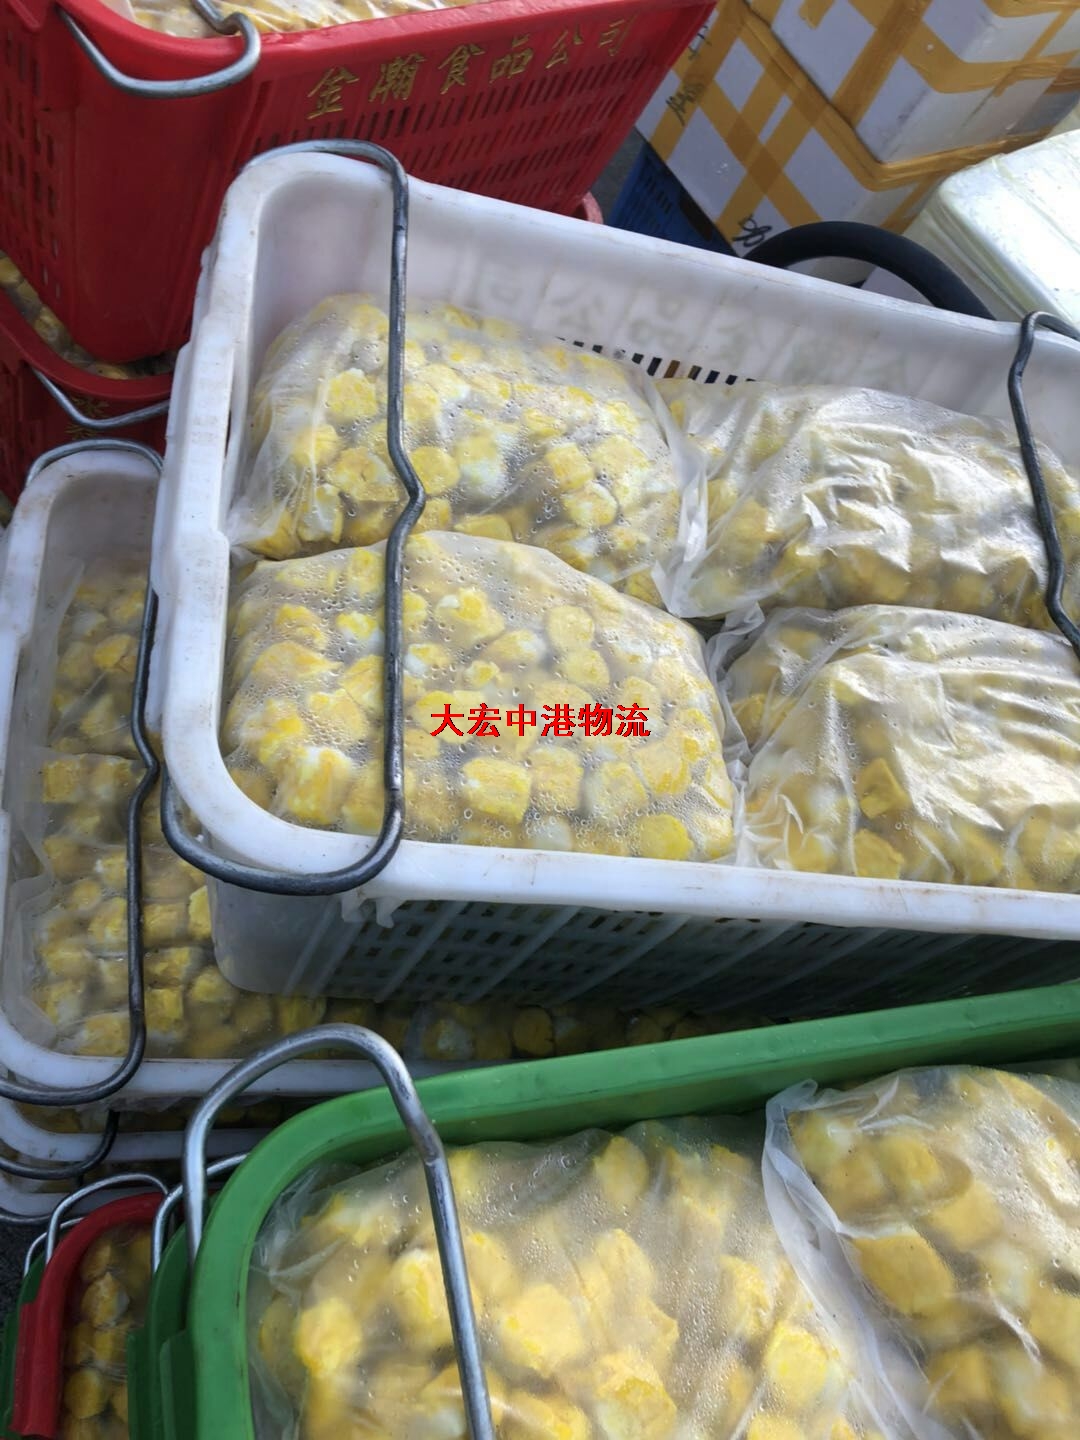 冷凍火鍋料香港進出口運輸-冷藏串串食材中港物流-冷藏冷凍食品香港物流